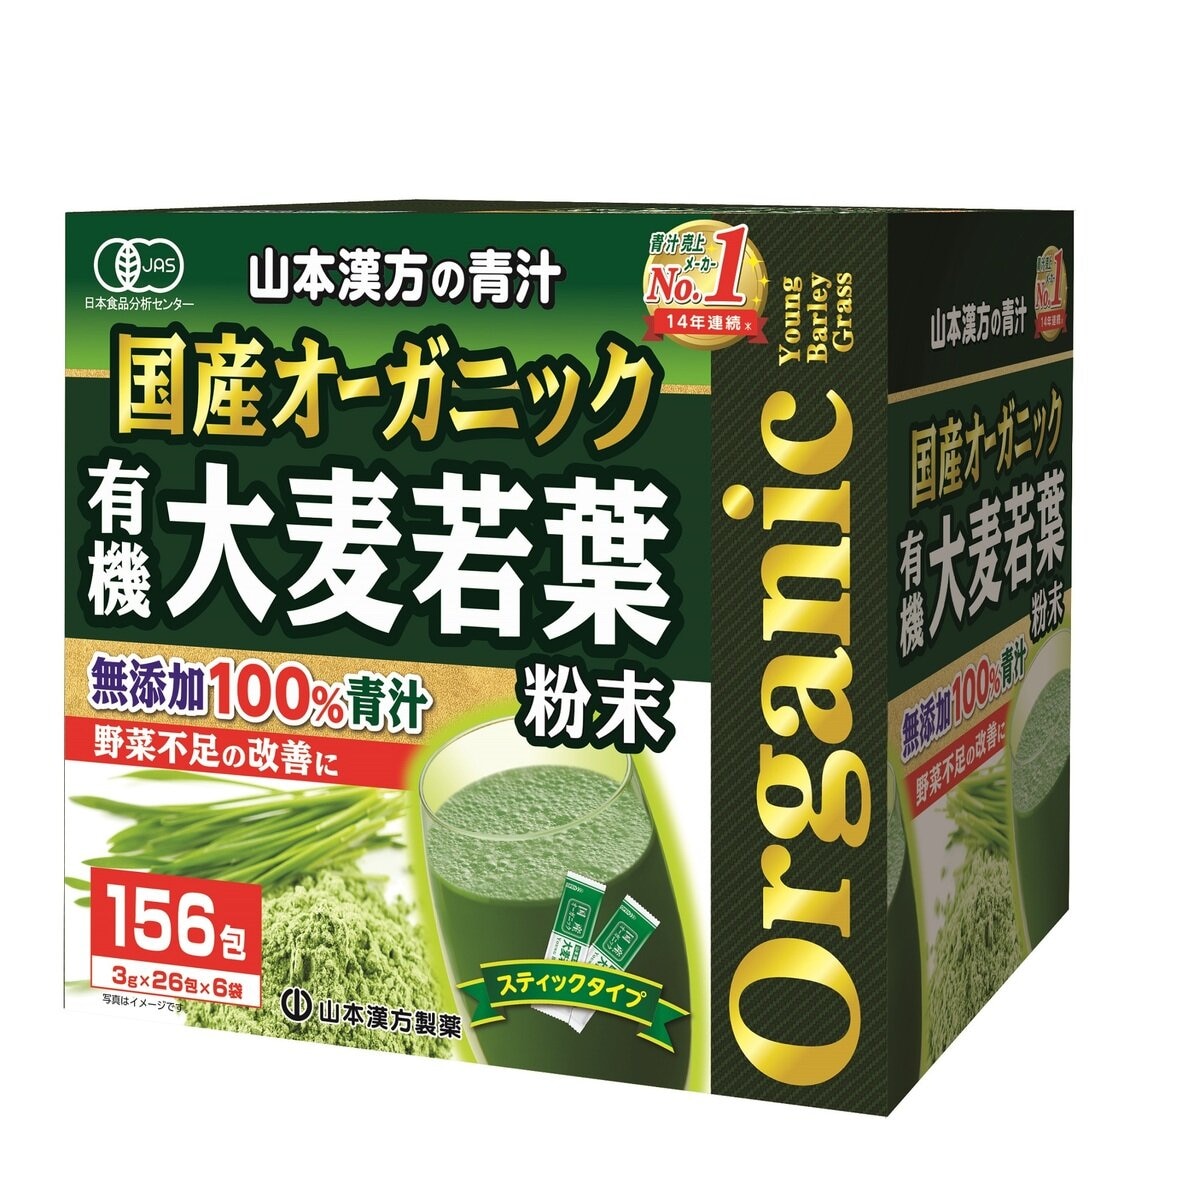 国産 無添加 100% オーガニック 青汁 3g x 156包入 Costco Japan